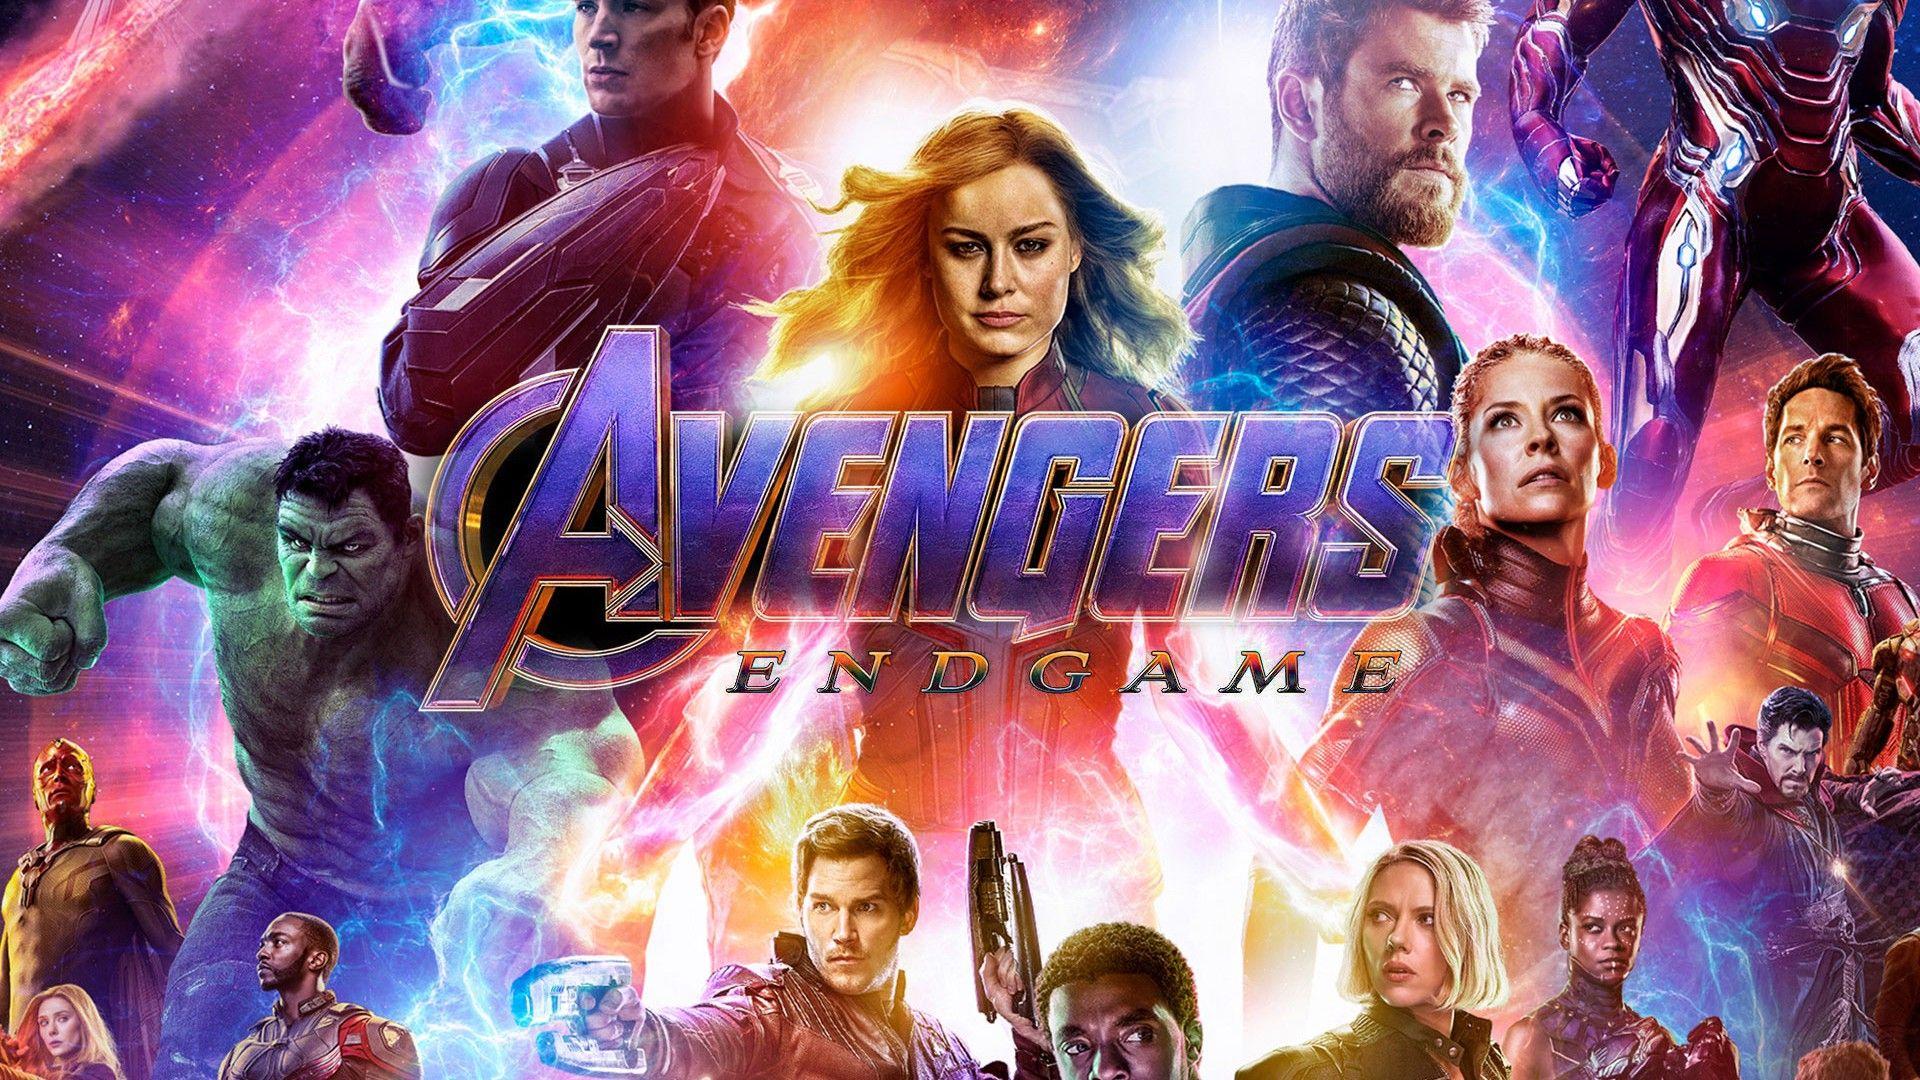 Avengers Endgame 2019 Poster Wallpaper Movie Poster Wallpaper HD. Movie posters, Best movie posters, Avengers